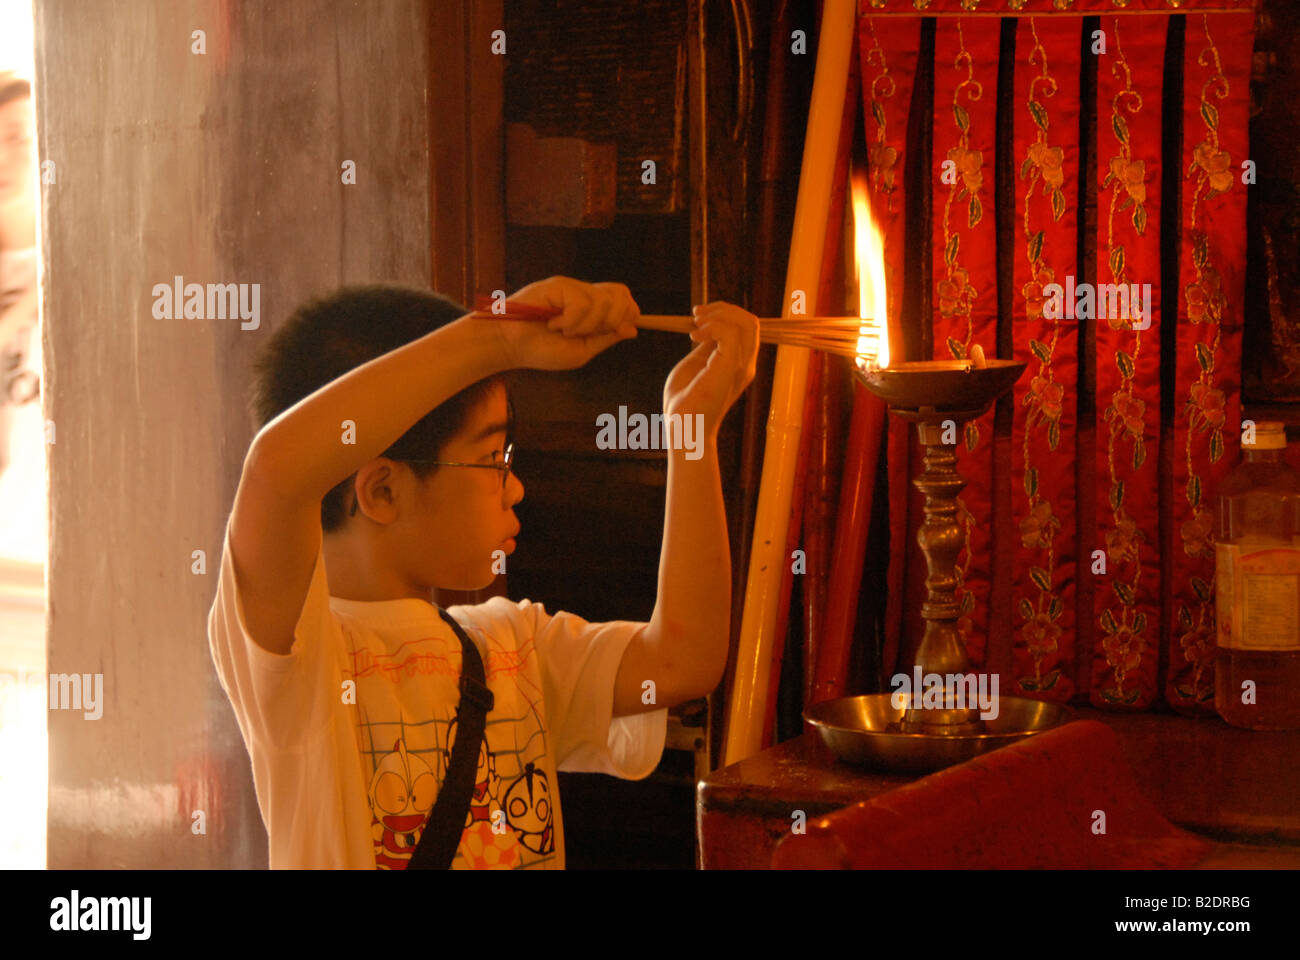 Bambino accendendo candele, Tempio Man Mo, Hollywood Road, Hong Kong, Cina Foto Stock